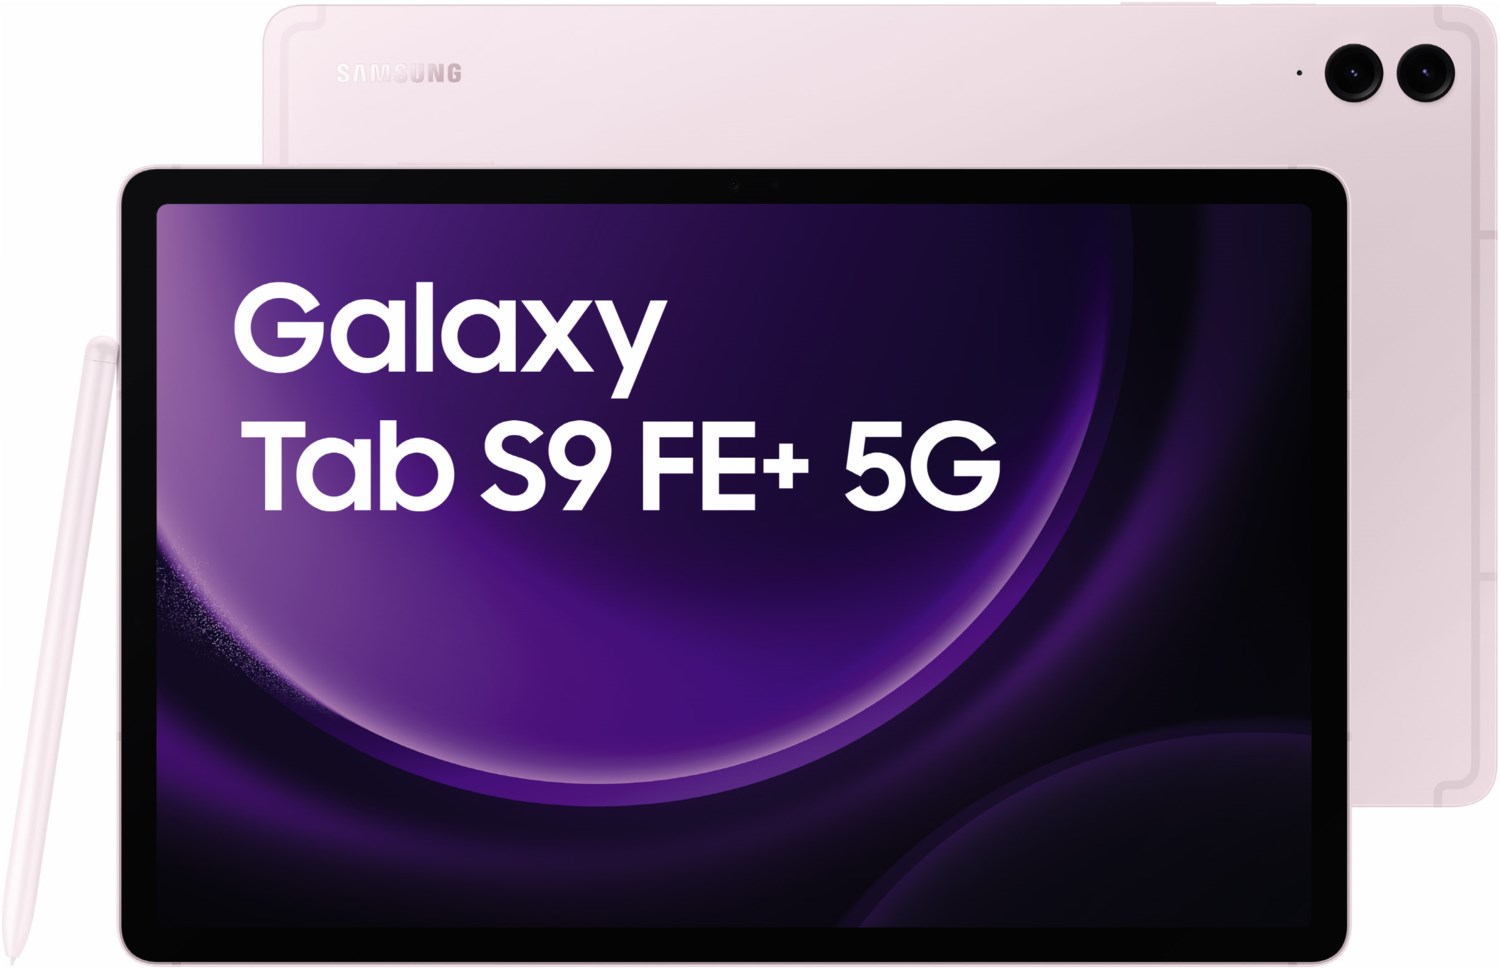 Galaxy Tab S9 FE+ (128GB) 5G lavendel von Samsung